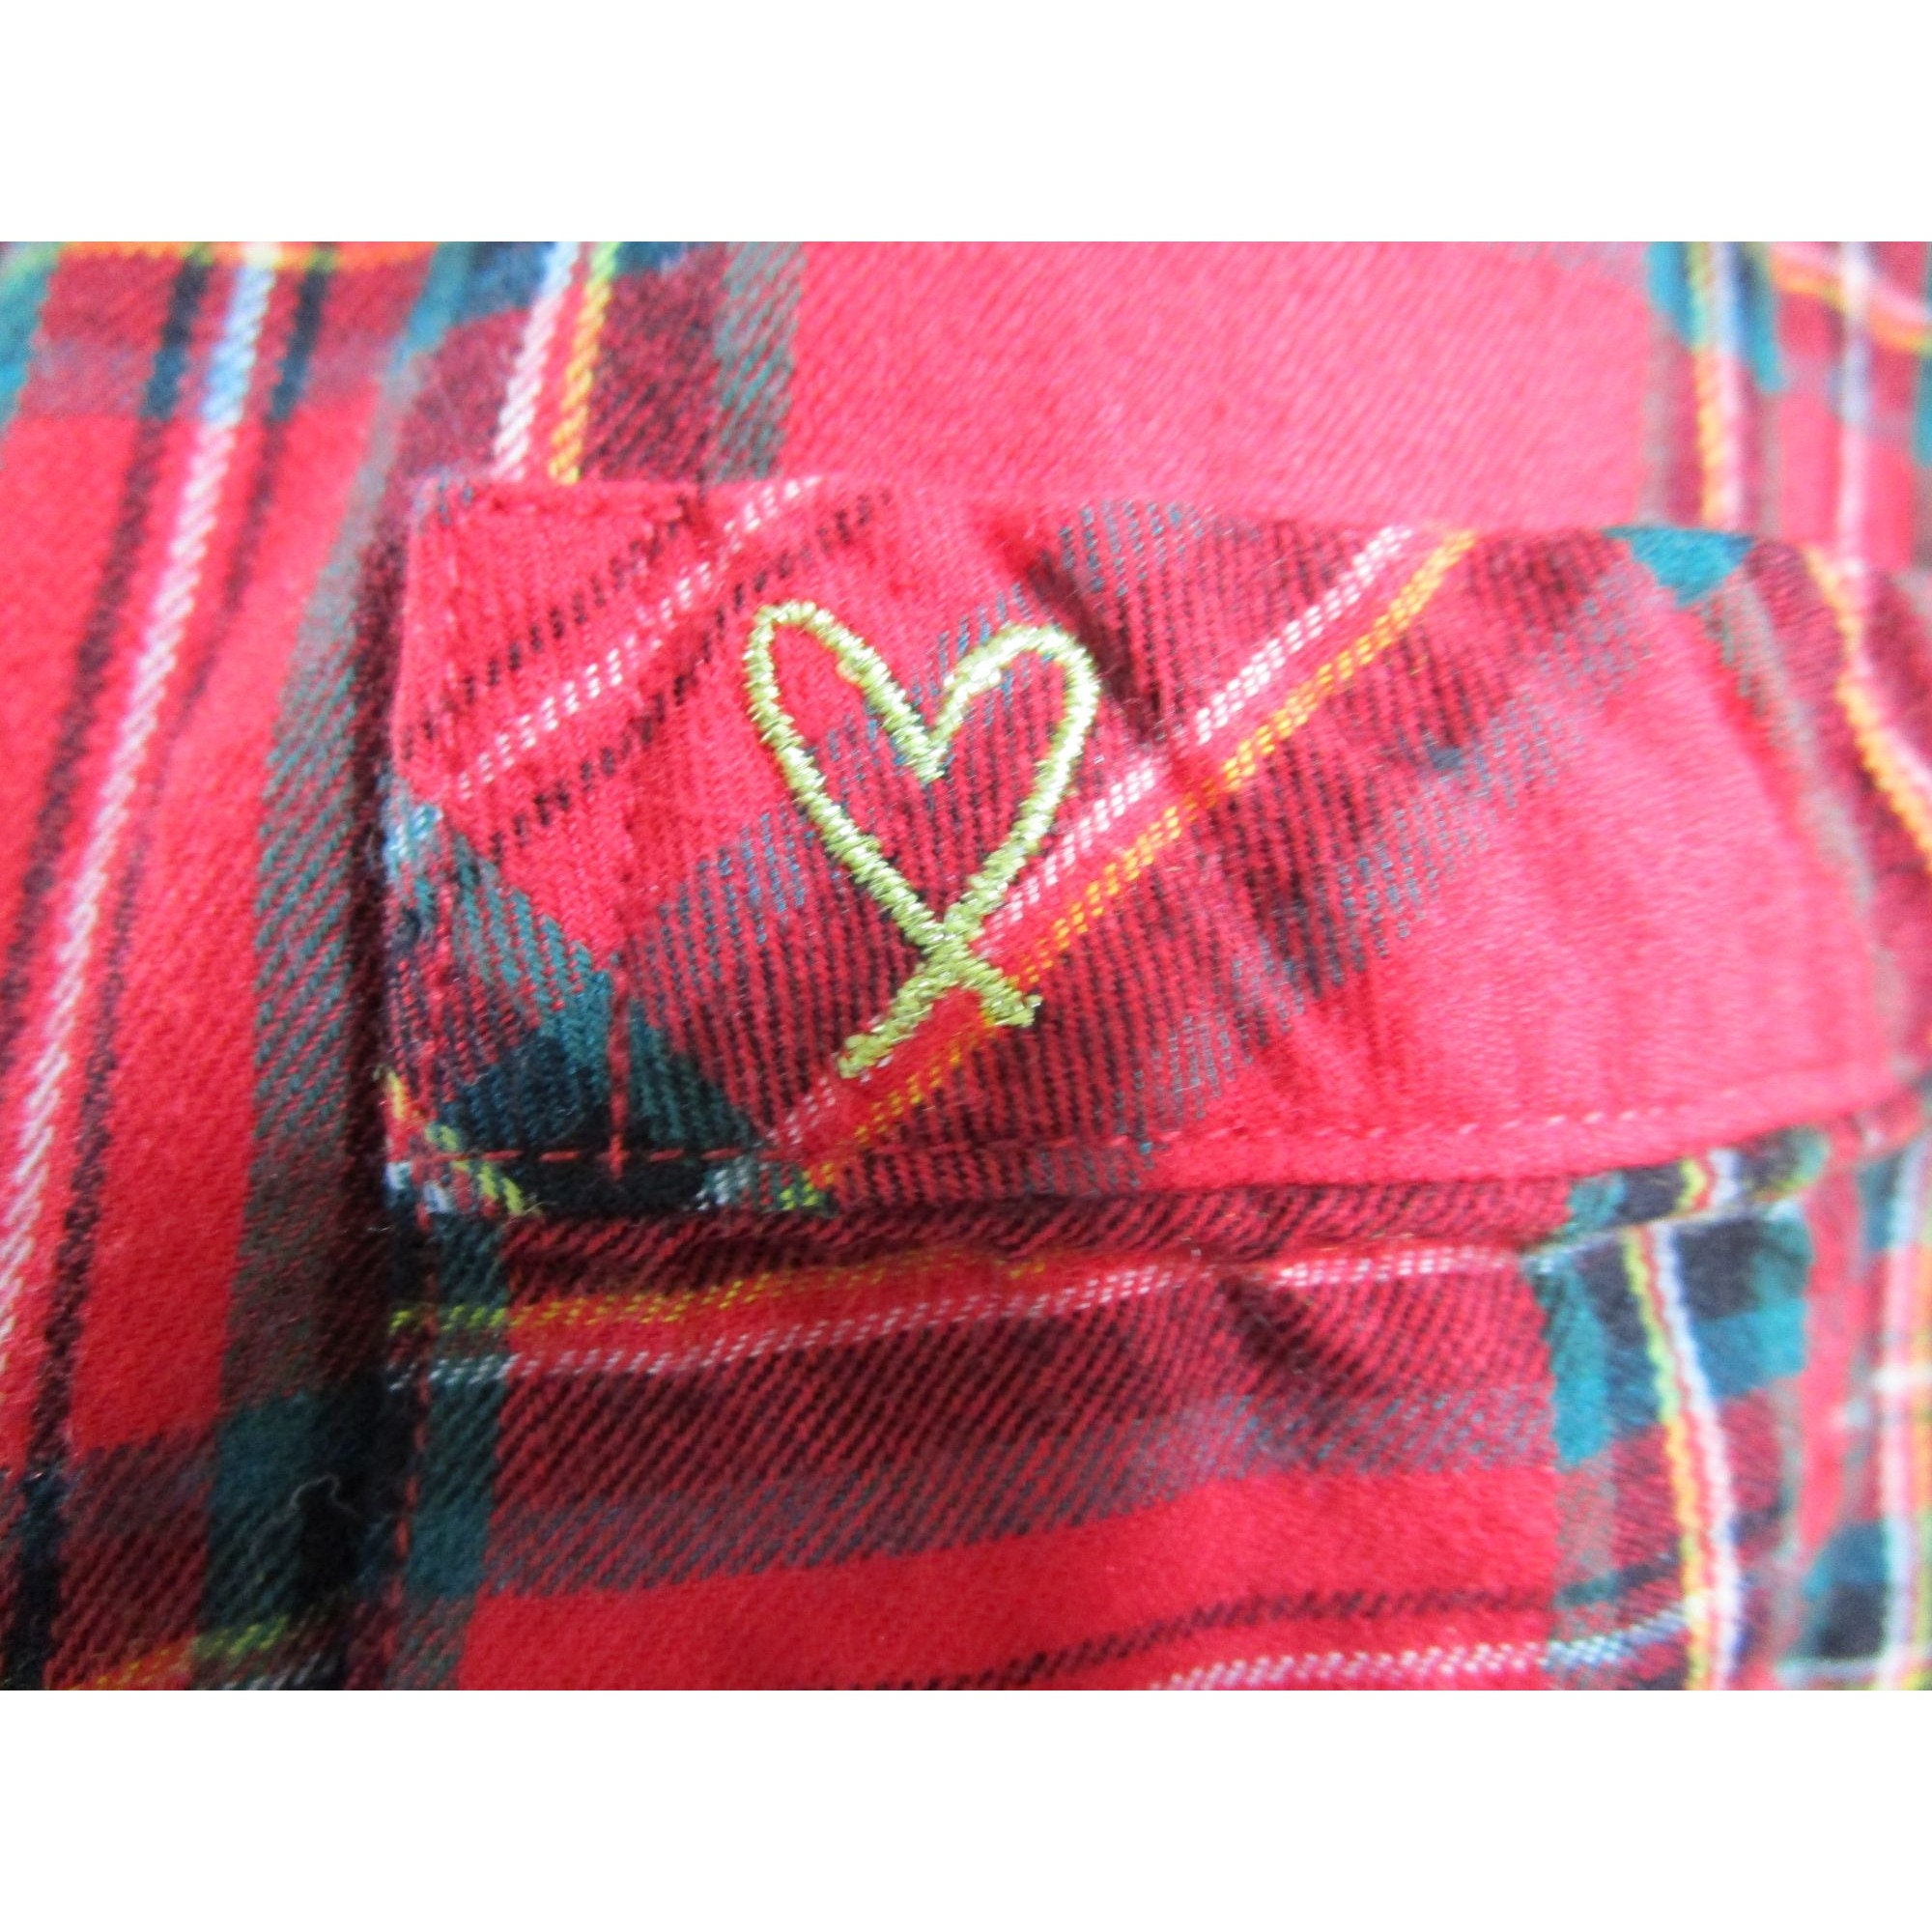 Set pigiama in misto cotone scozzese rosso Victoria's Secret GUC da donna  XL morbido e comodo -  Italia